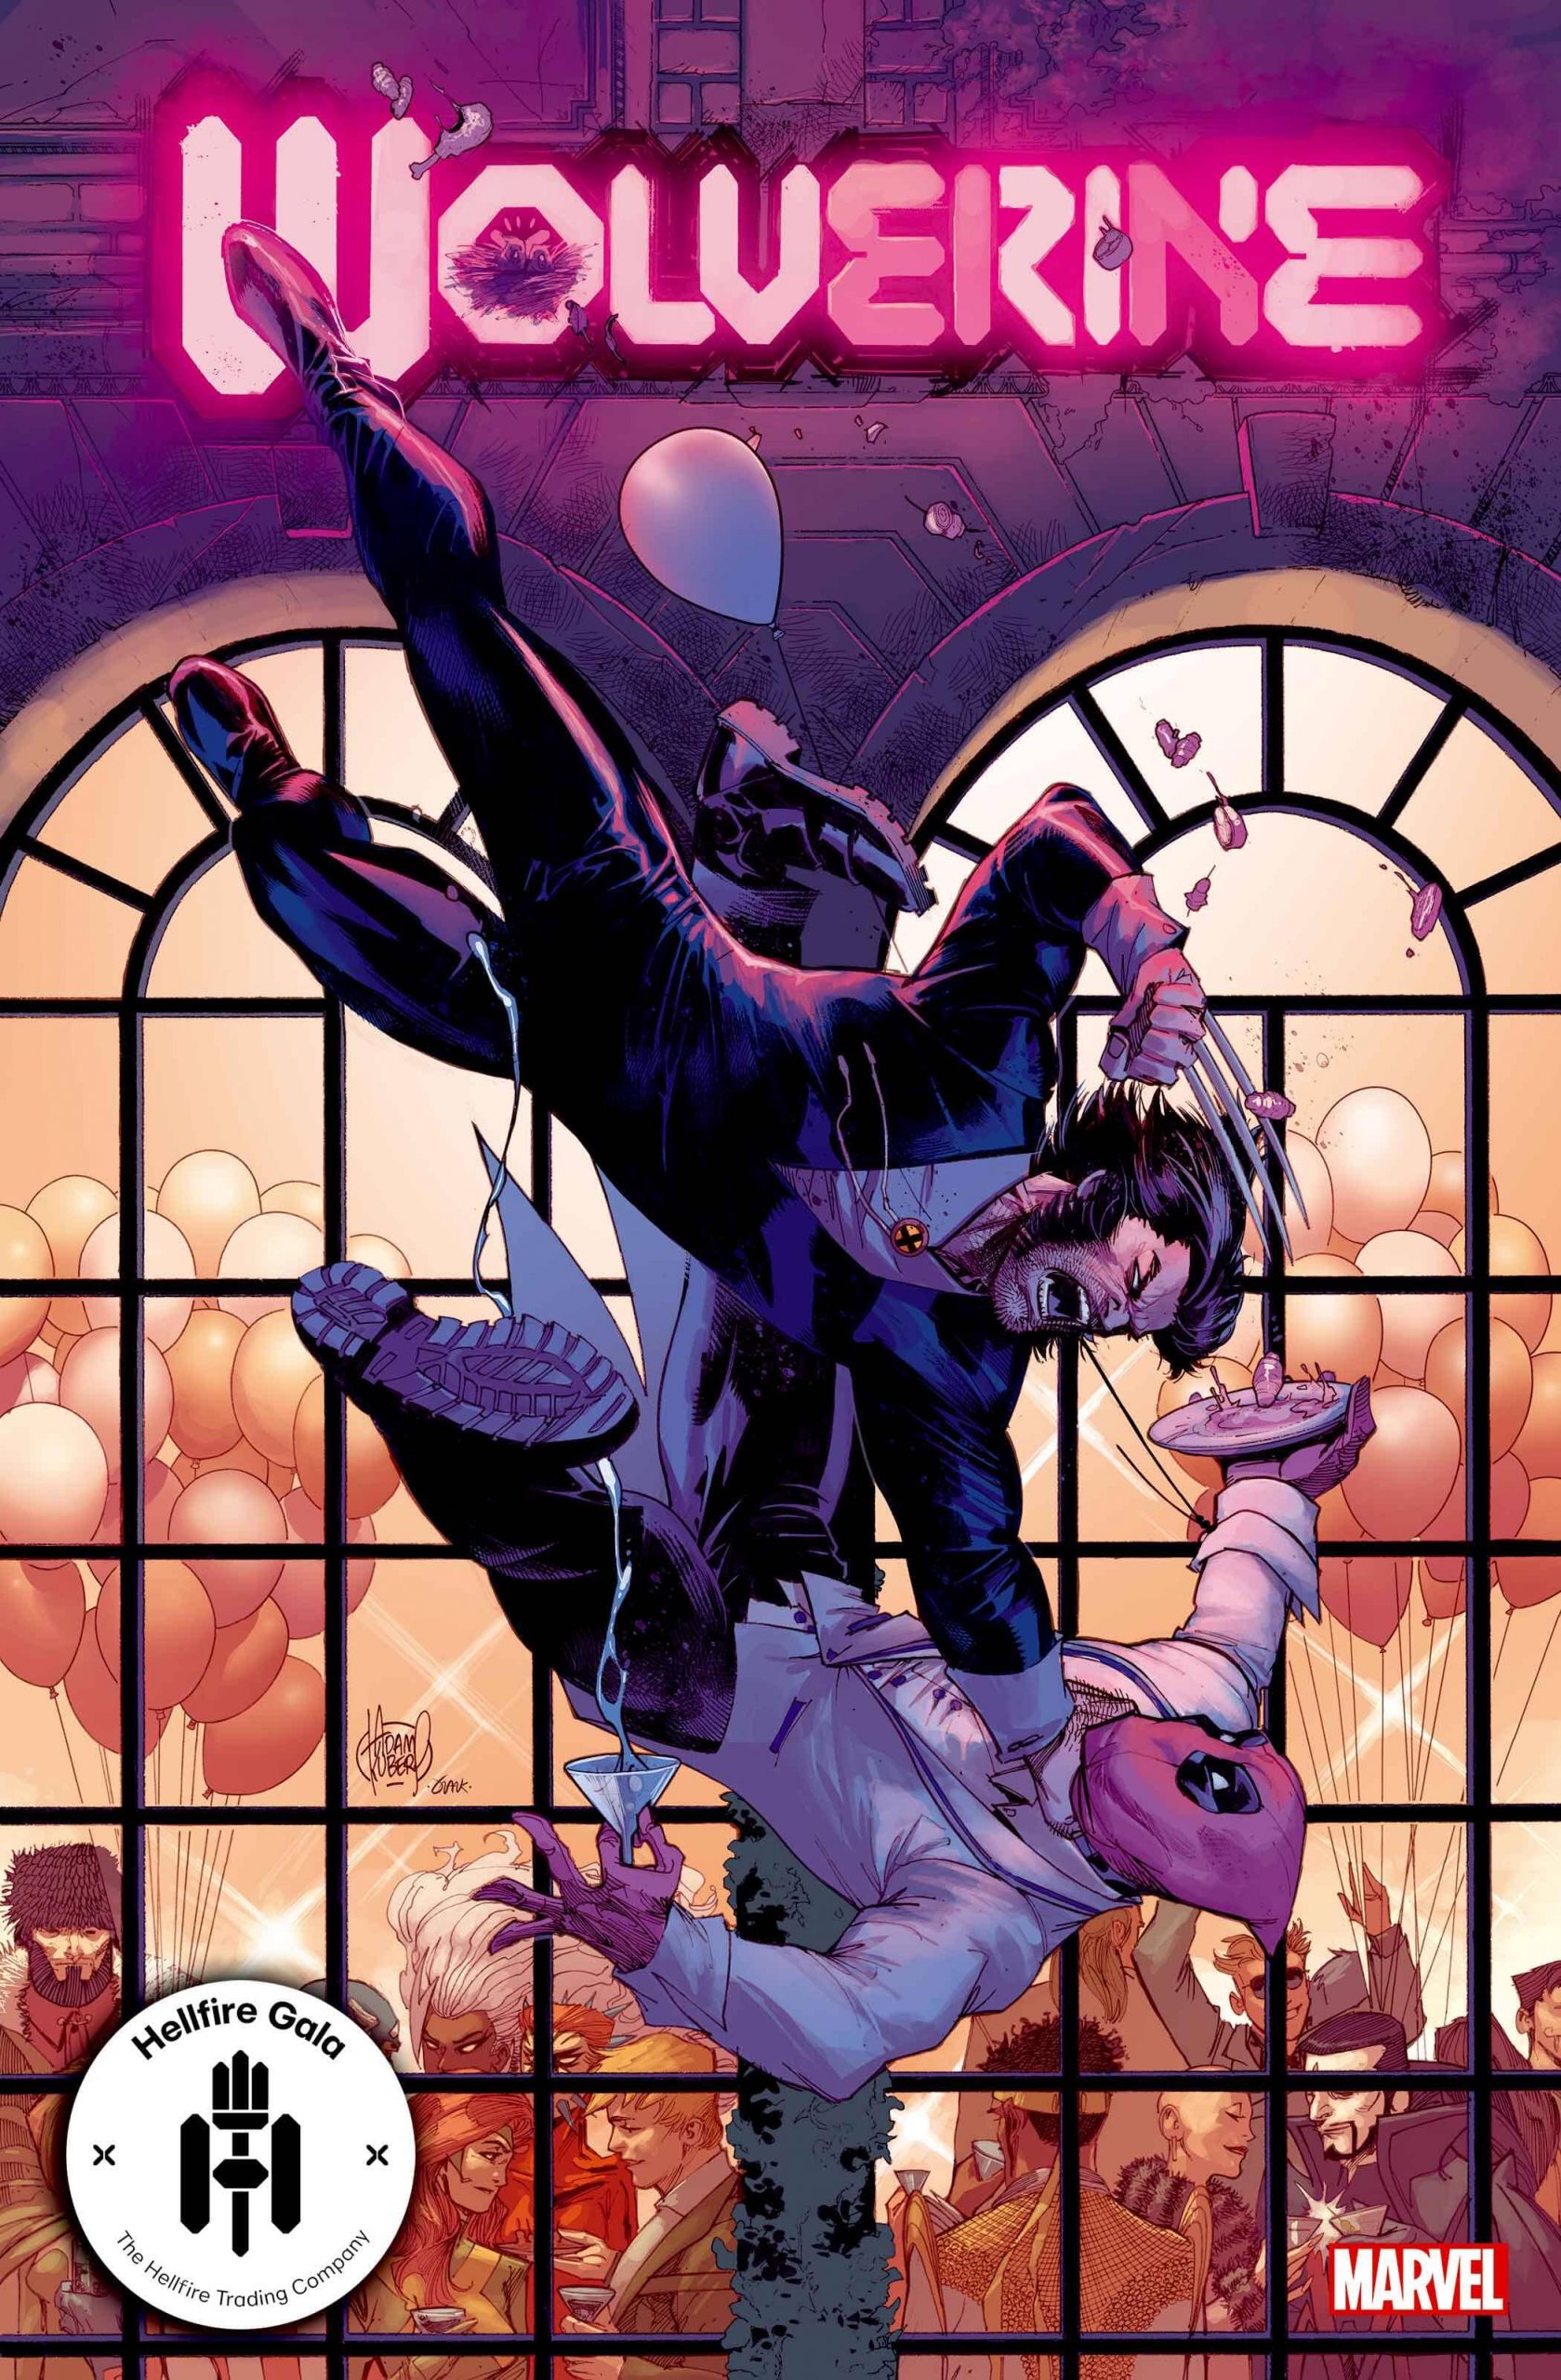 Wolverine #13 - Hellfire Gala - A noite de Gala do Clube do Inferno em X-Men - Blog Farofeiros